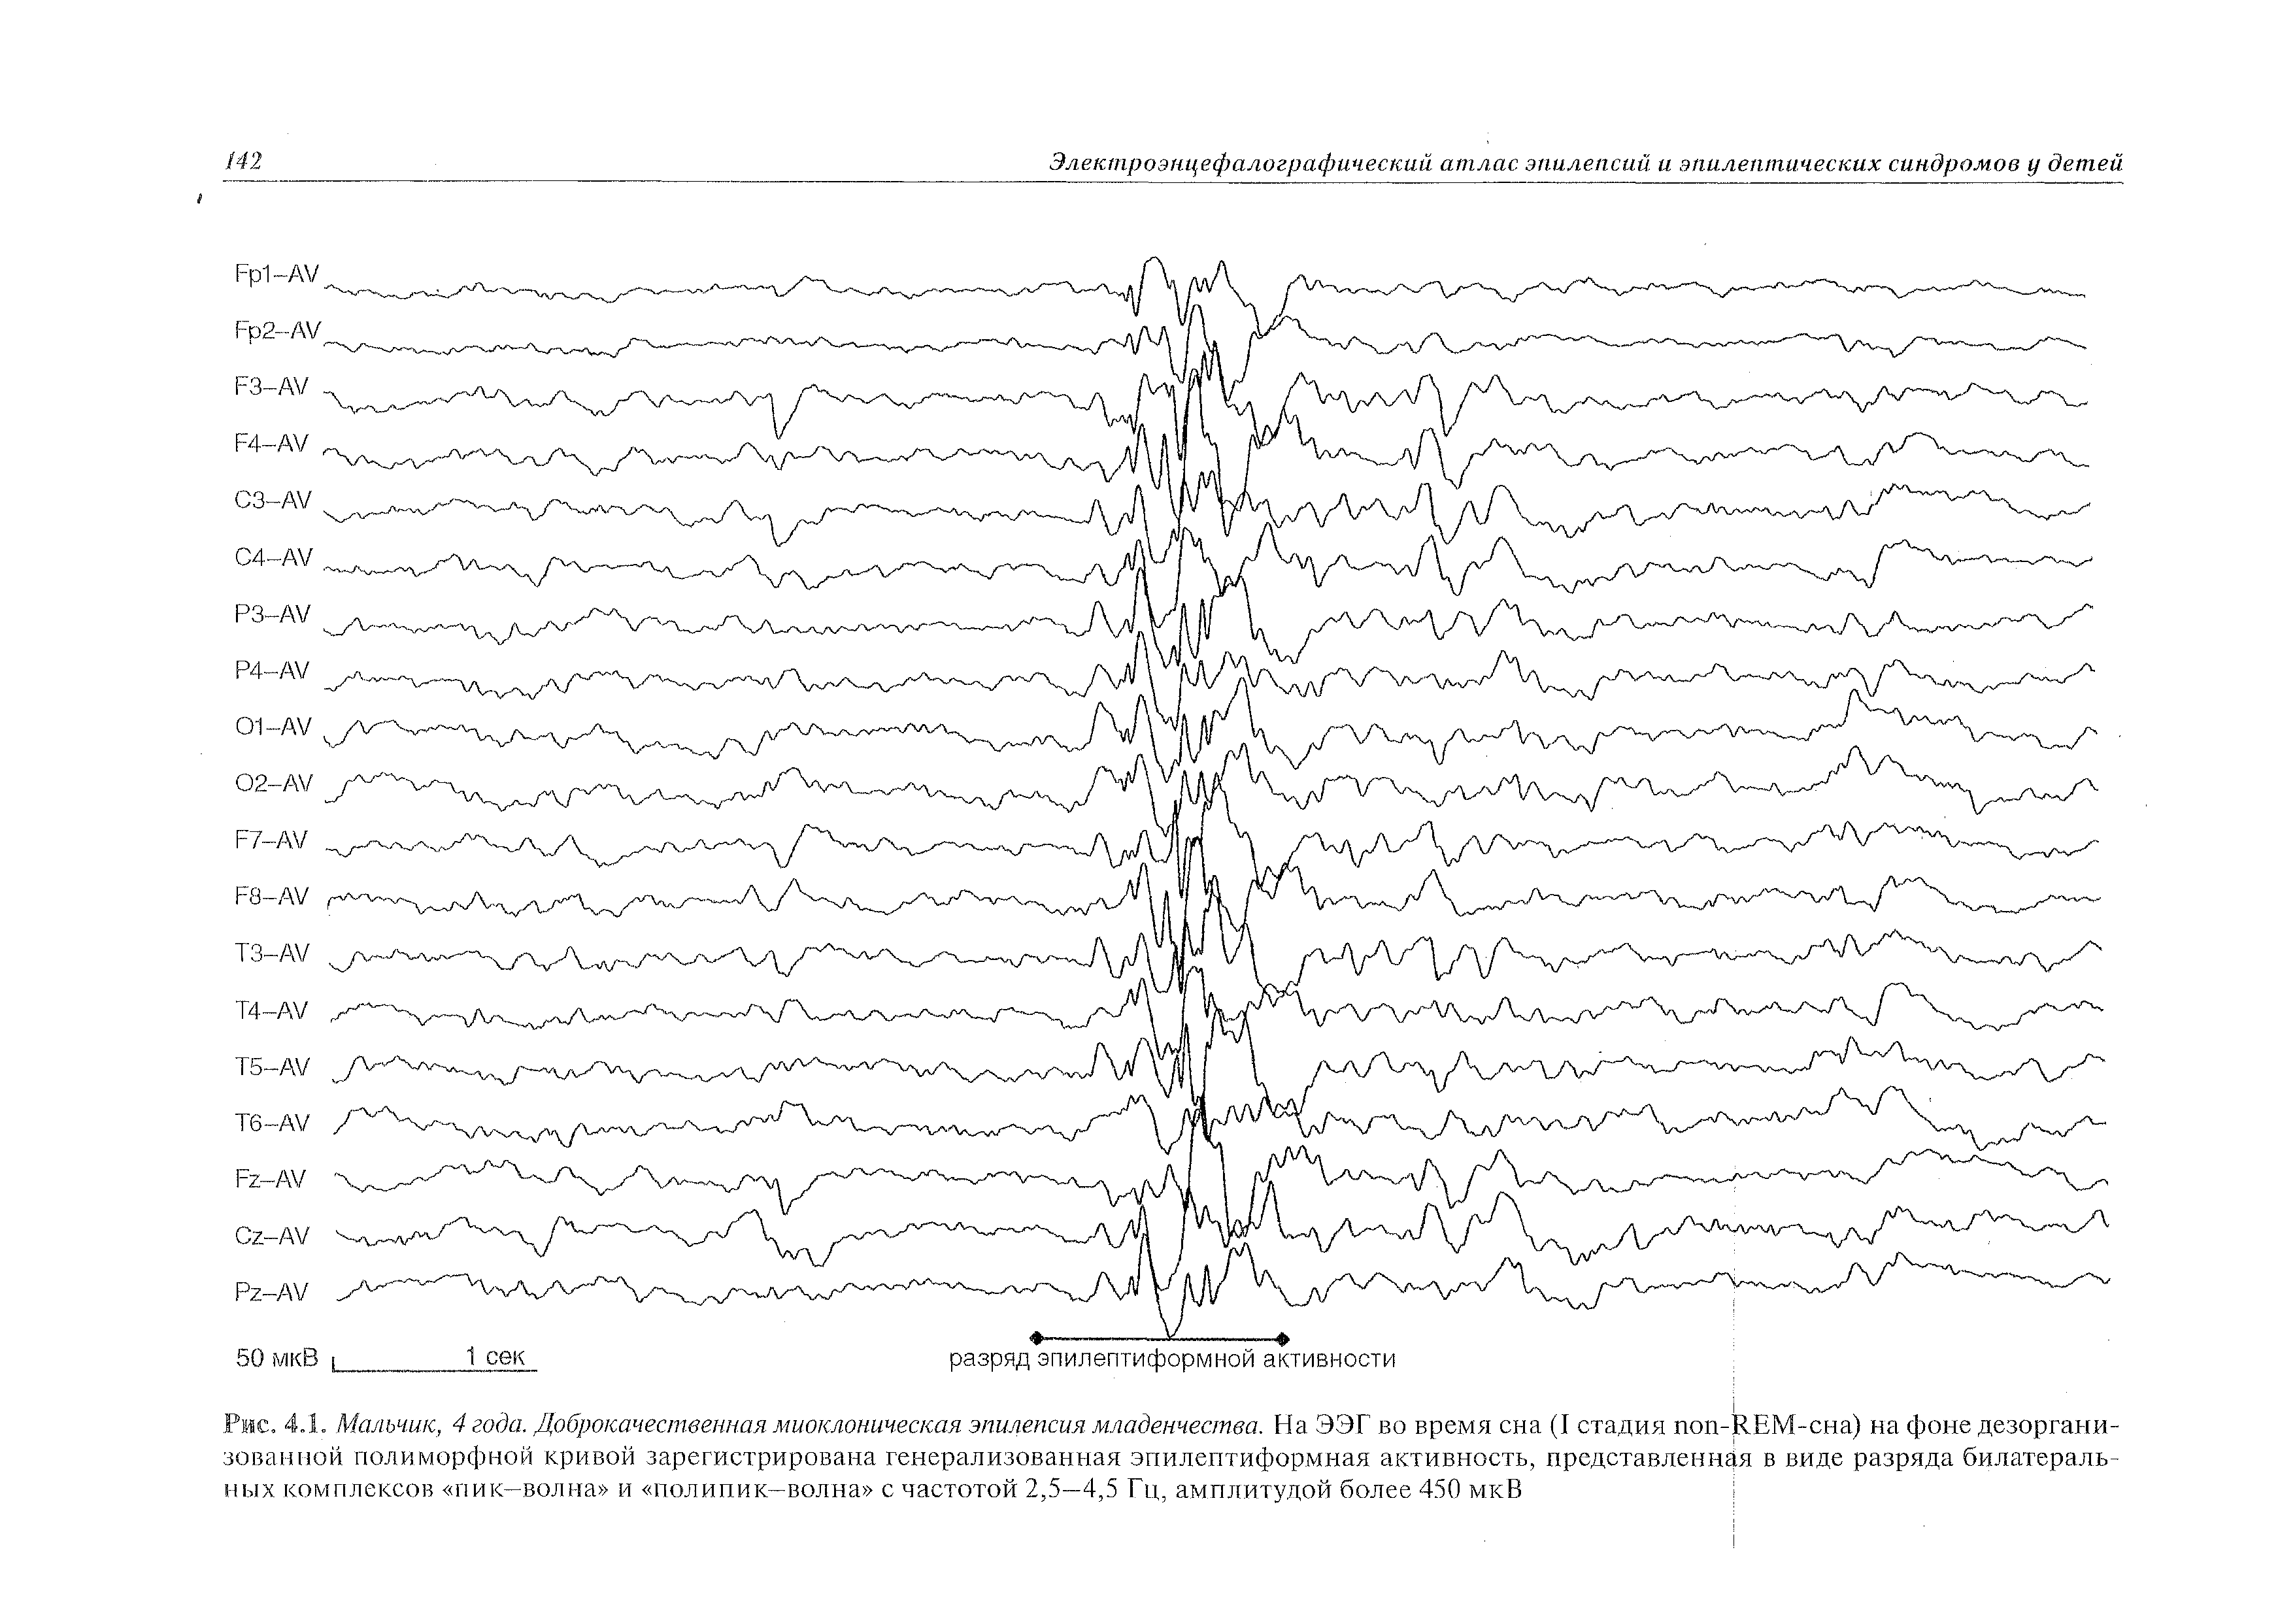 Рис. 4.1. Мальчик, 4 года. Доброкачественная миоклоническая эпилепсия младенчества. На ЭЭГ во время сна (I стадия поп-ЯЕМ-сна) на фоне дезорганизованной полиморфной кривой зарегистрирована генерализованная эпилептиформная активность, представленная в виде разряда билатеральных комплексов пик—волна и полипик—волна с частотой 2,5—4,5 Гц, амплитудой более 450 мкВ...